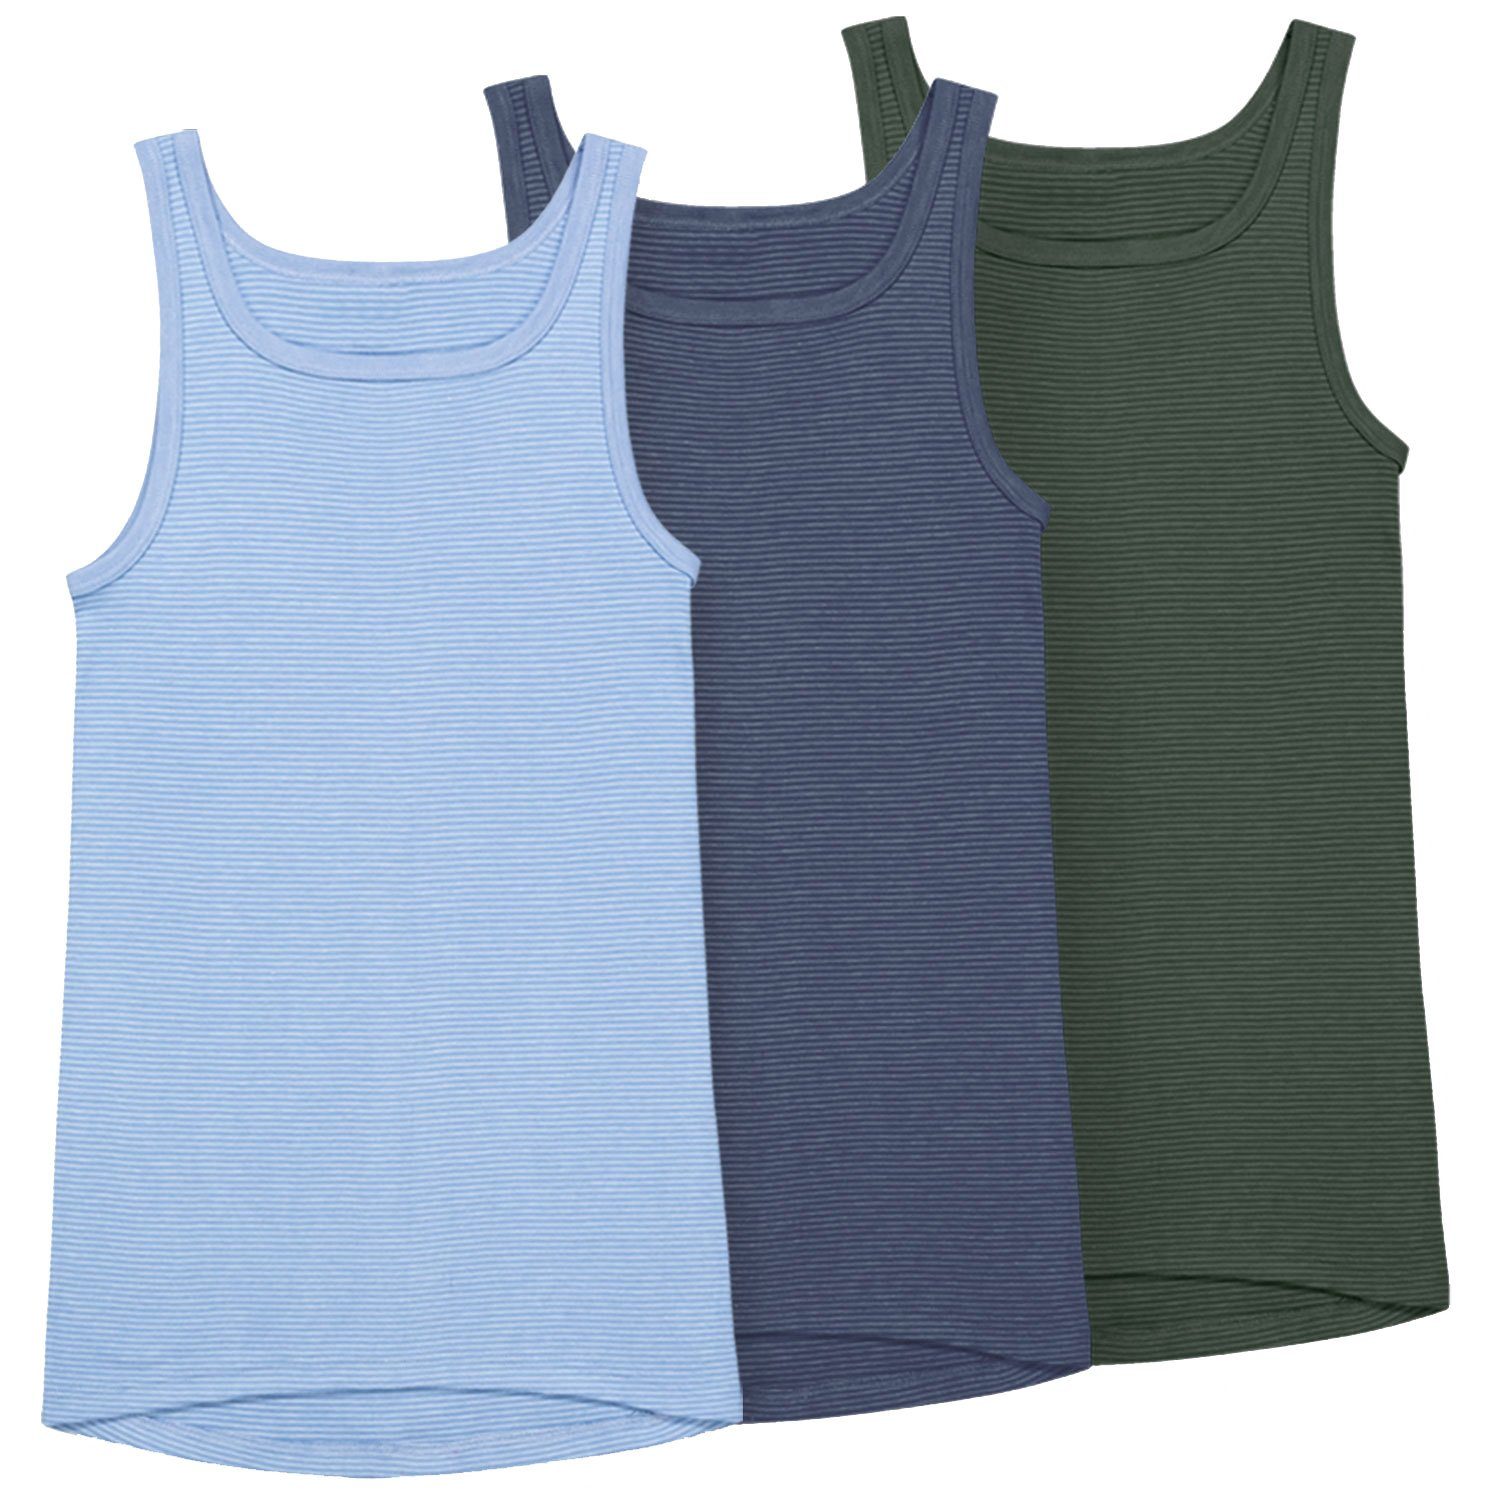 Ammann Unterhemd Jeans (Mehrpack, 3-St., 3 Stück) strapazierfähig und pflegeleicht im 3er Pack dunkelblau / olive / hellblau